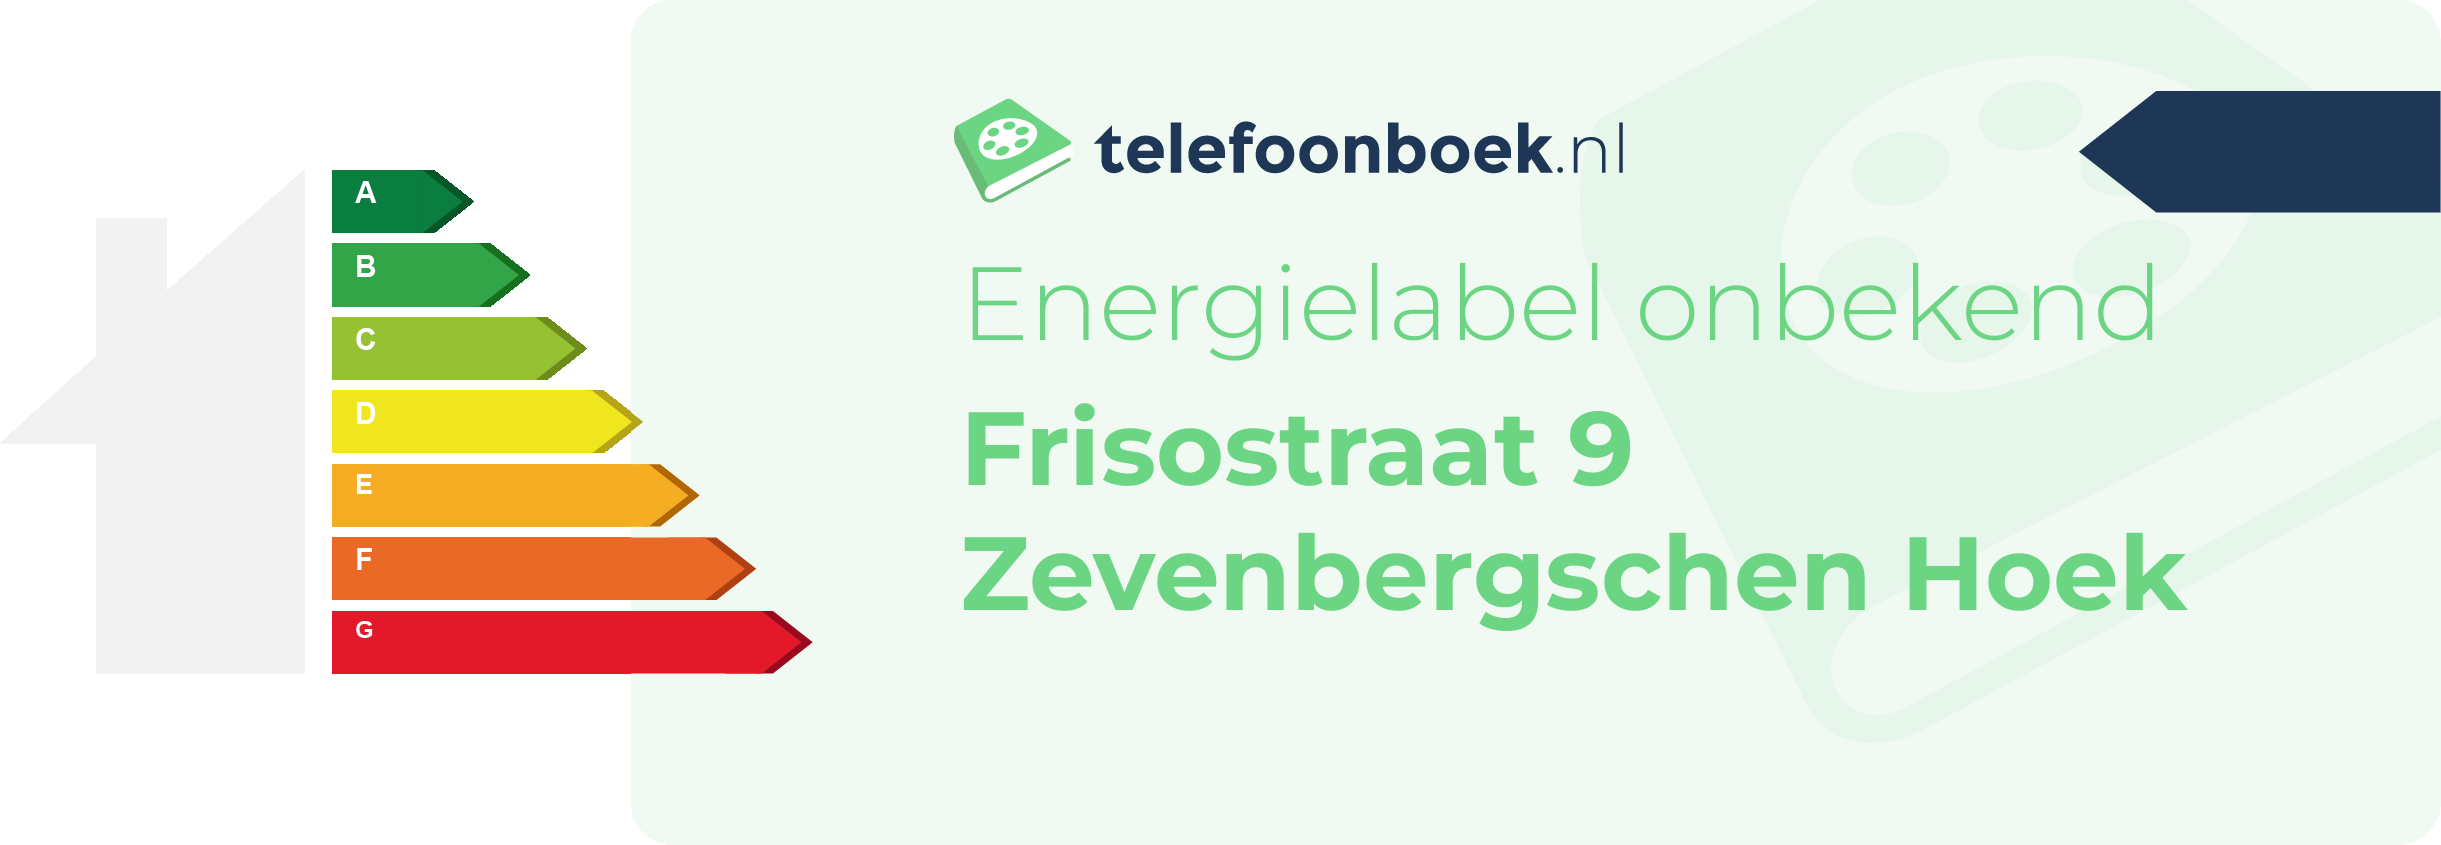 Energielabel Frisostraat 9 Zevenbergschen Hoek